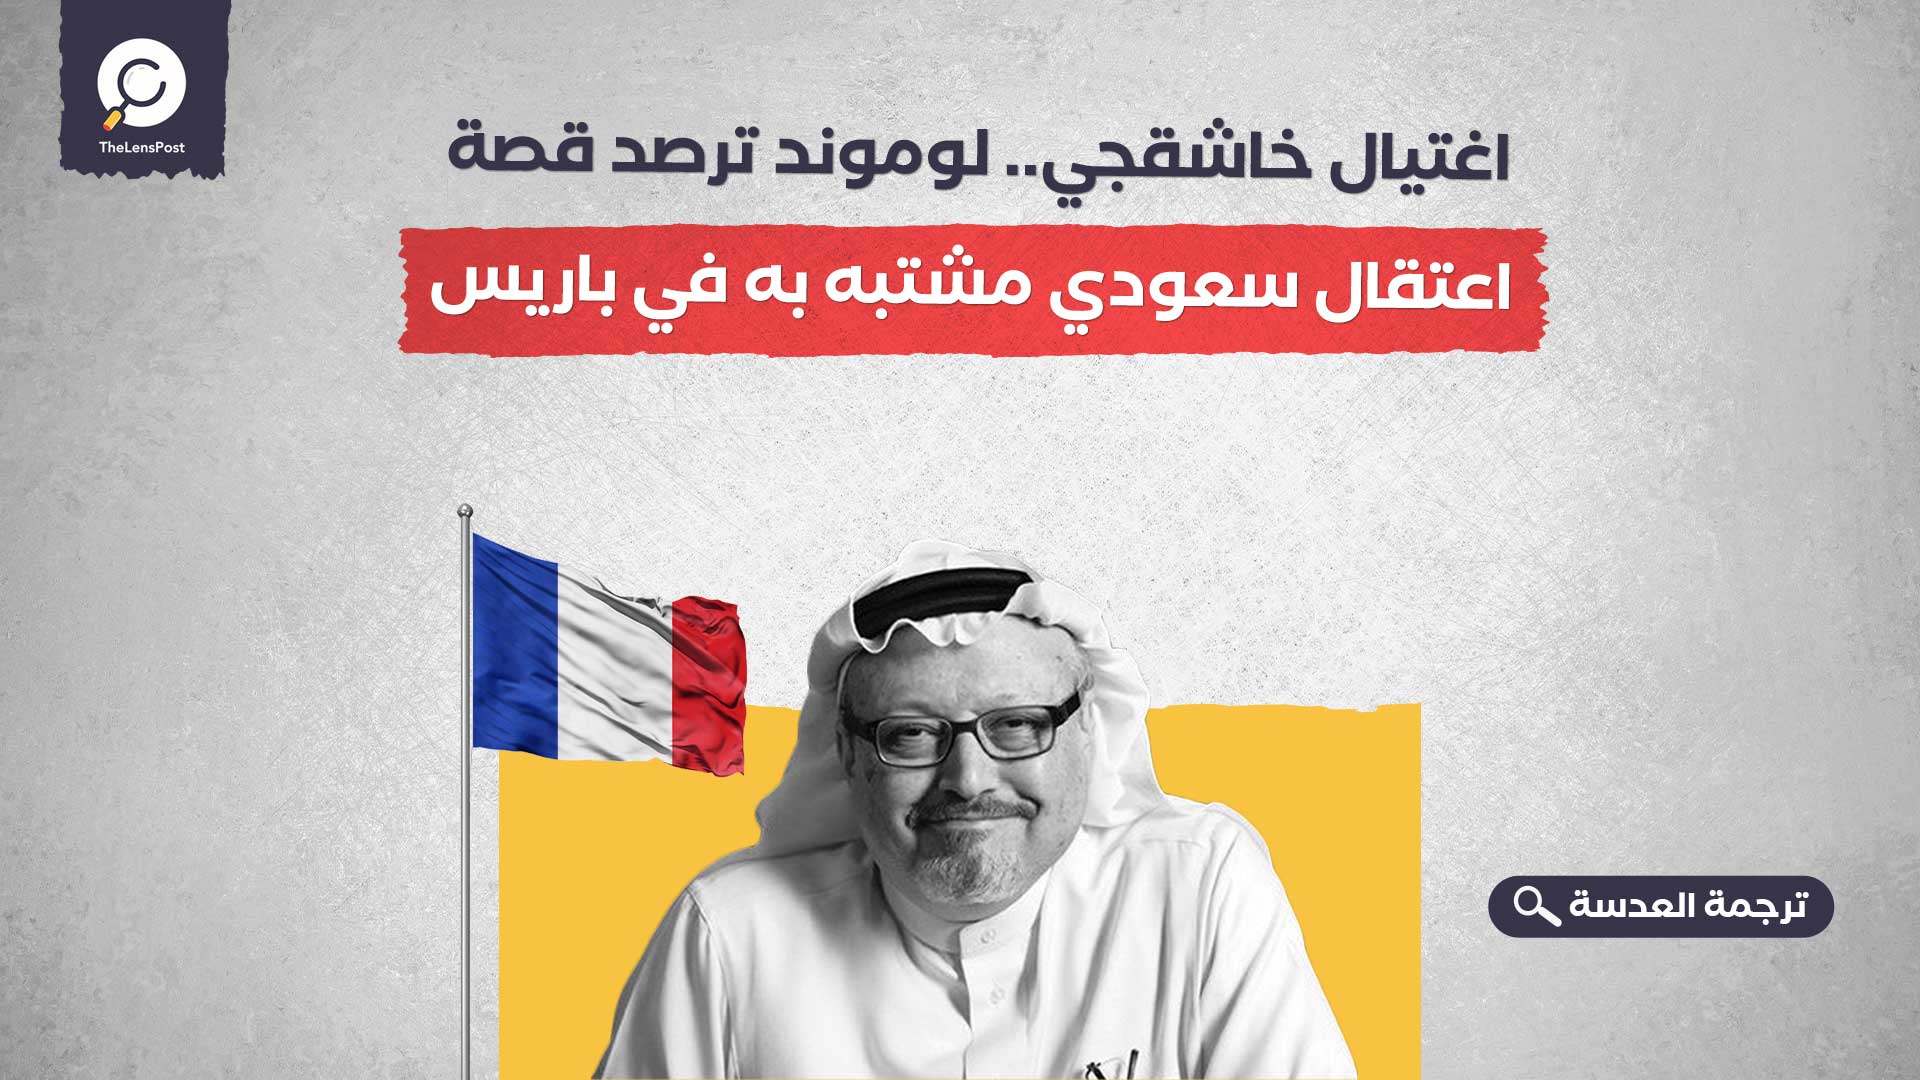 اغتيال خاشقجي.. لوموند ترصد قصة اعتقال سعودي مشتبه به في باريس